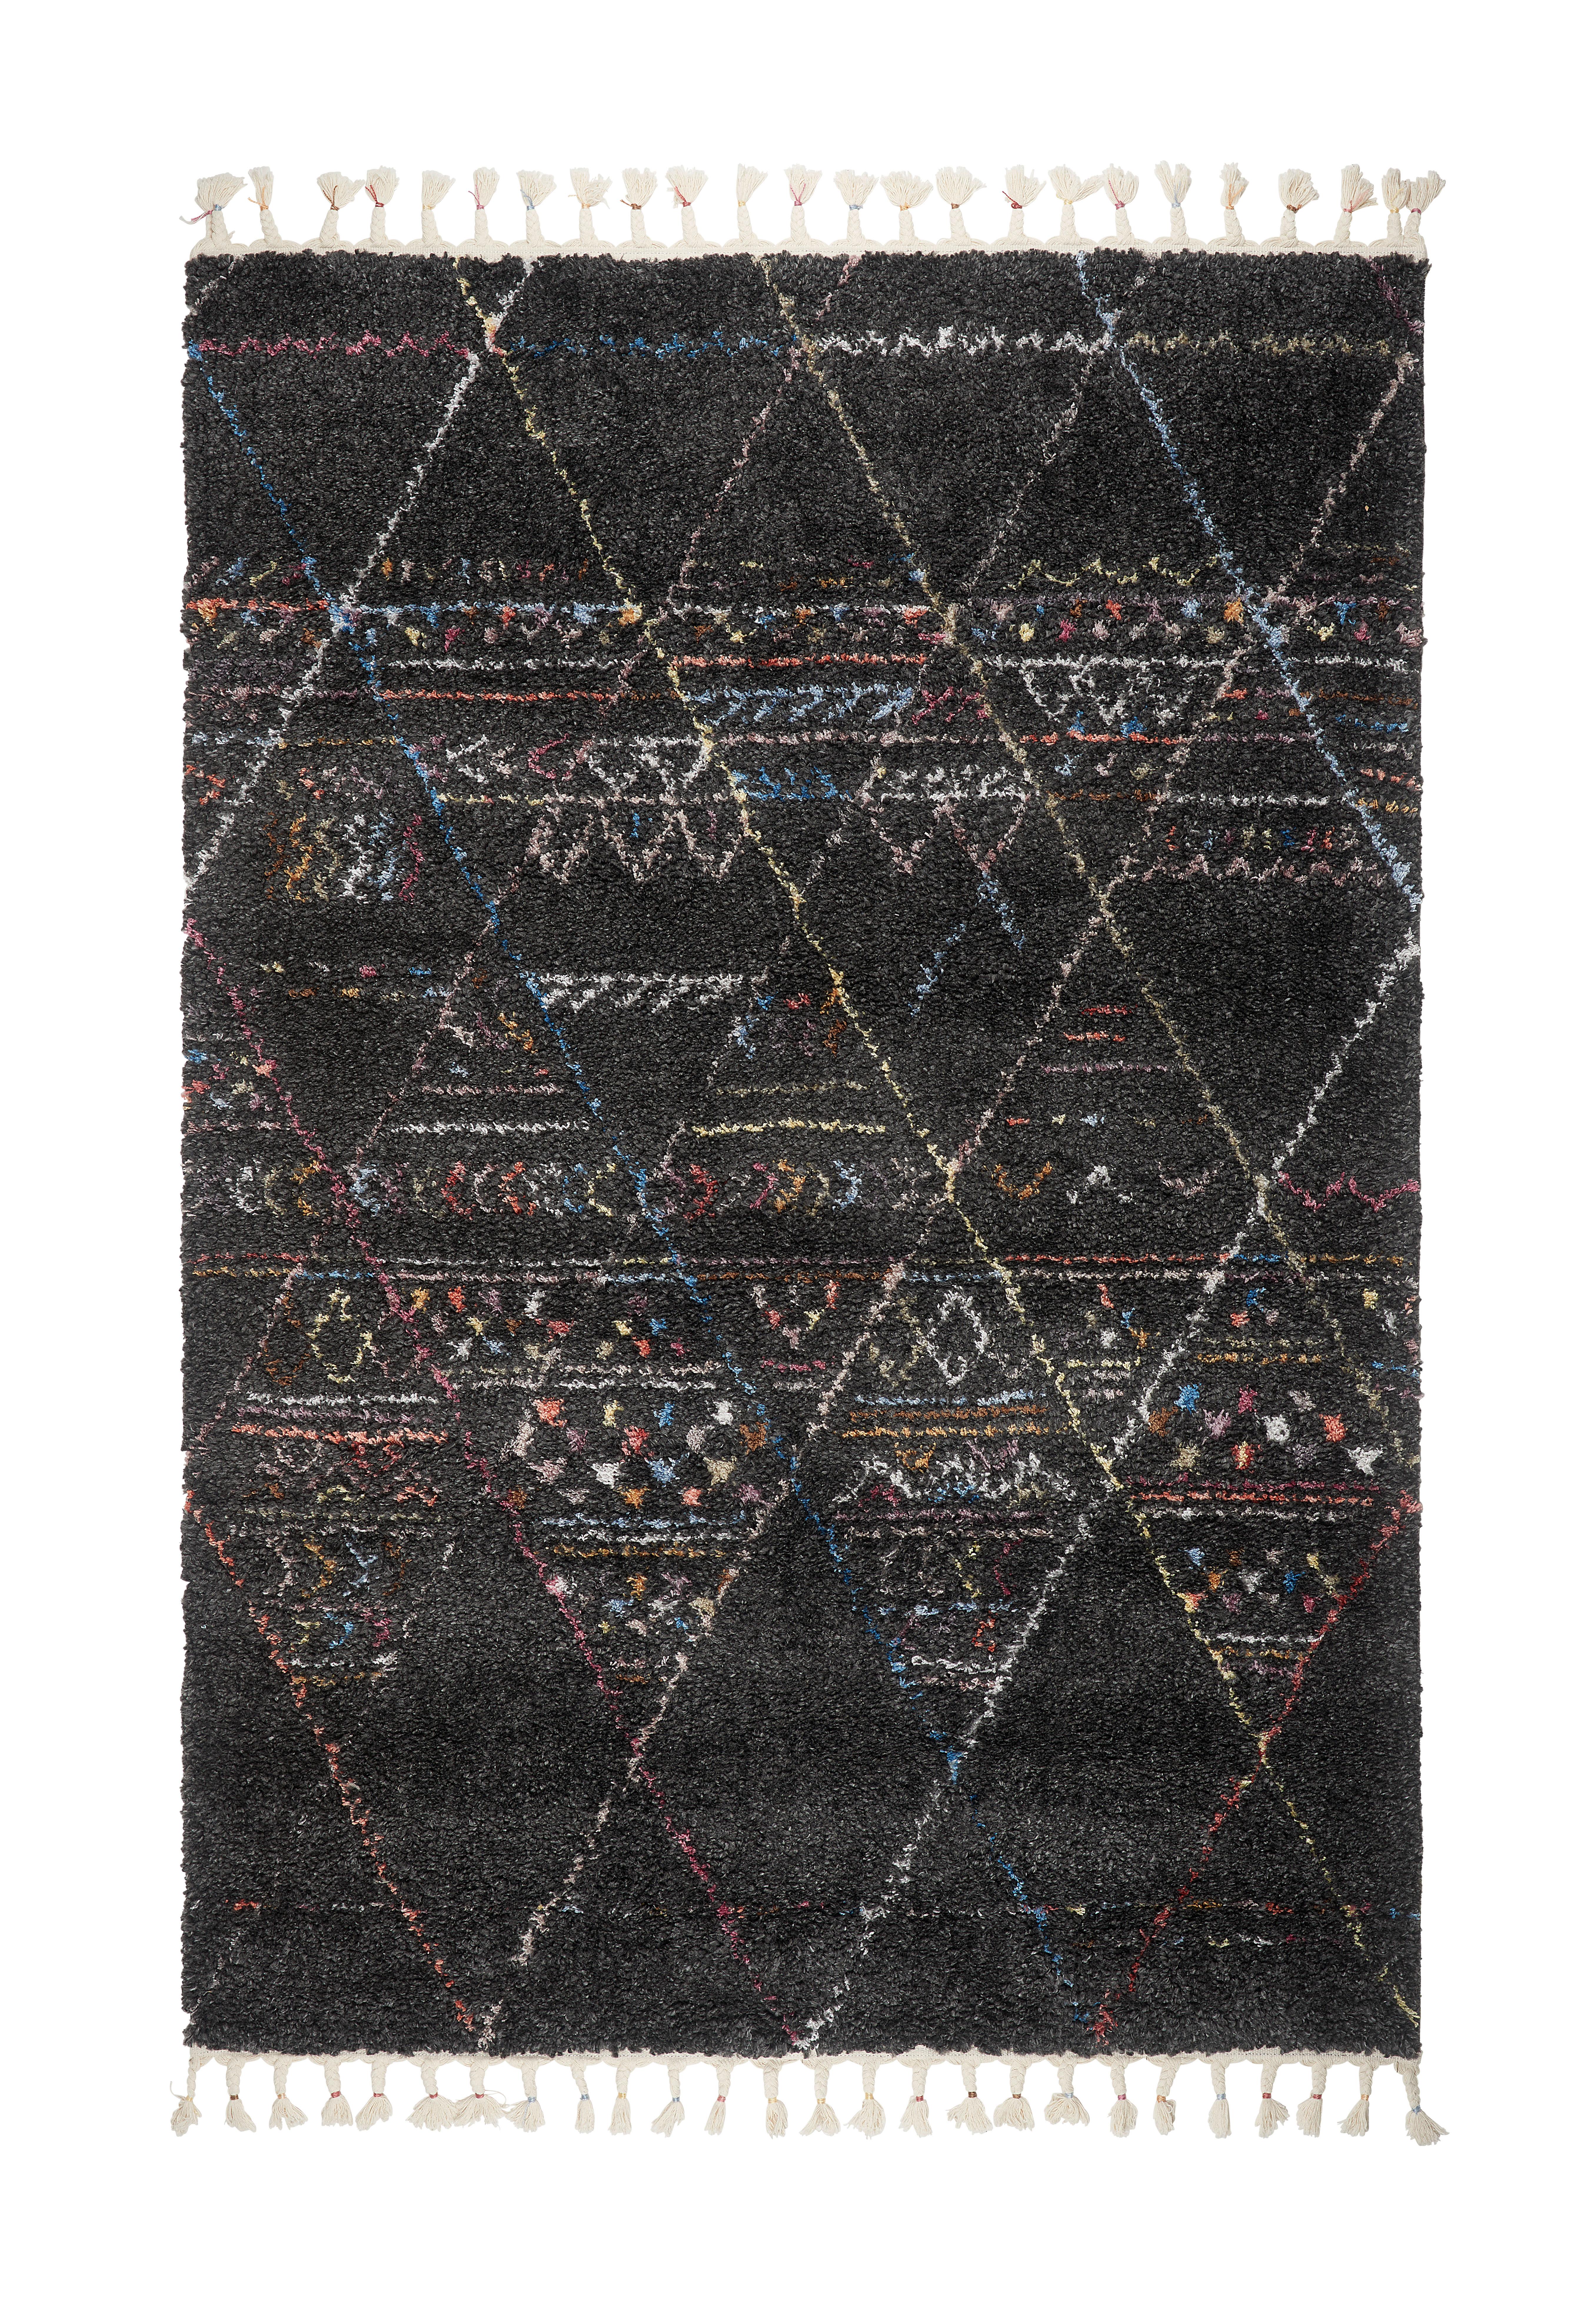 Hochflor Teppich Anthrazit Esmeralda 120x170 cm - Anthrazit, ROMANTIK / LANDHAUS, Textil (120/170cm) - James Wood